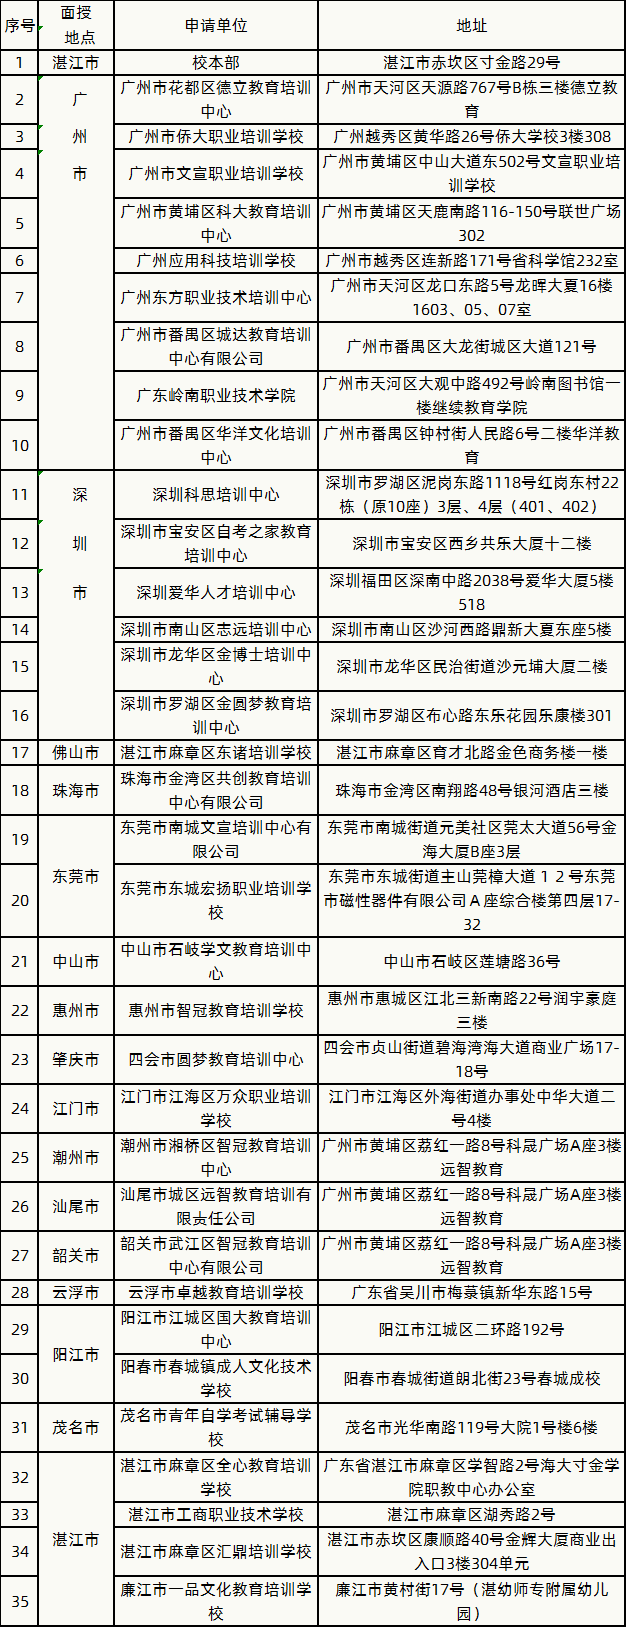 2020年岭南师范学院成人高考招生简章(图1)